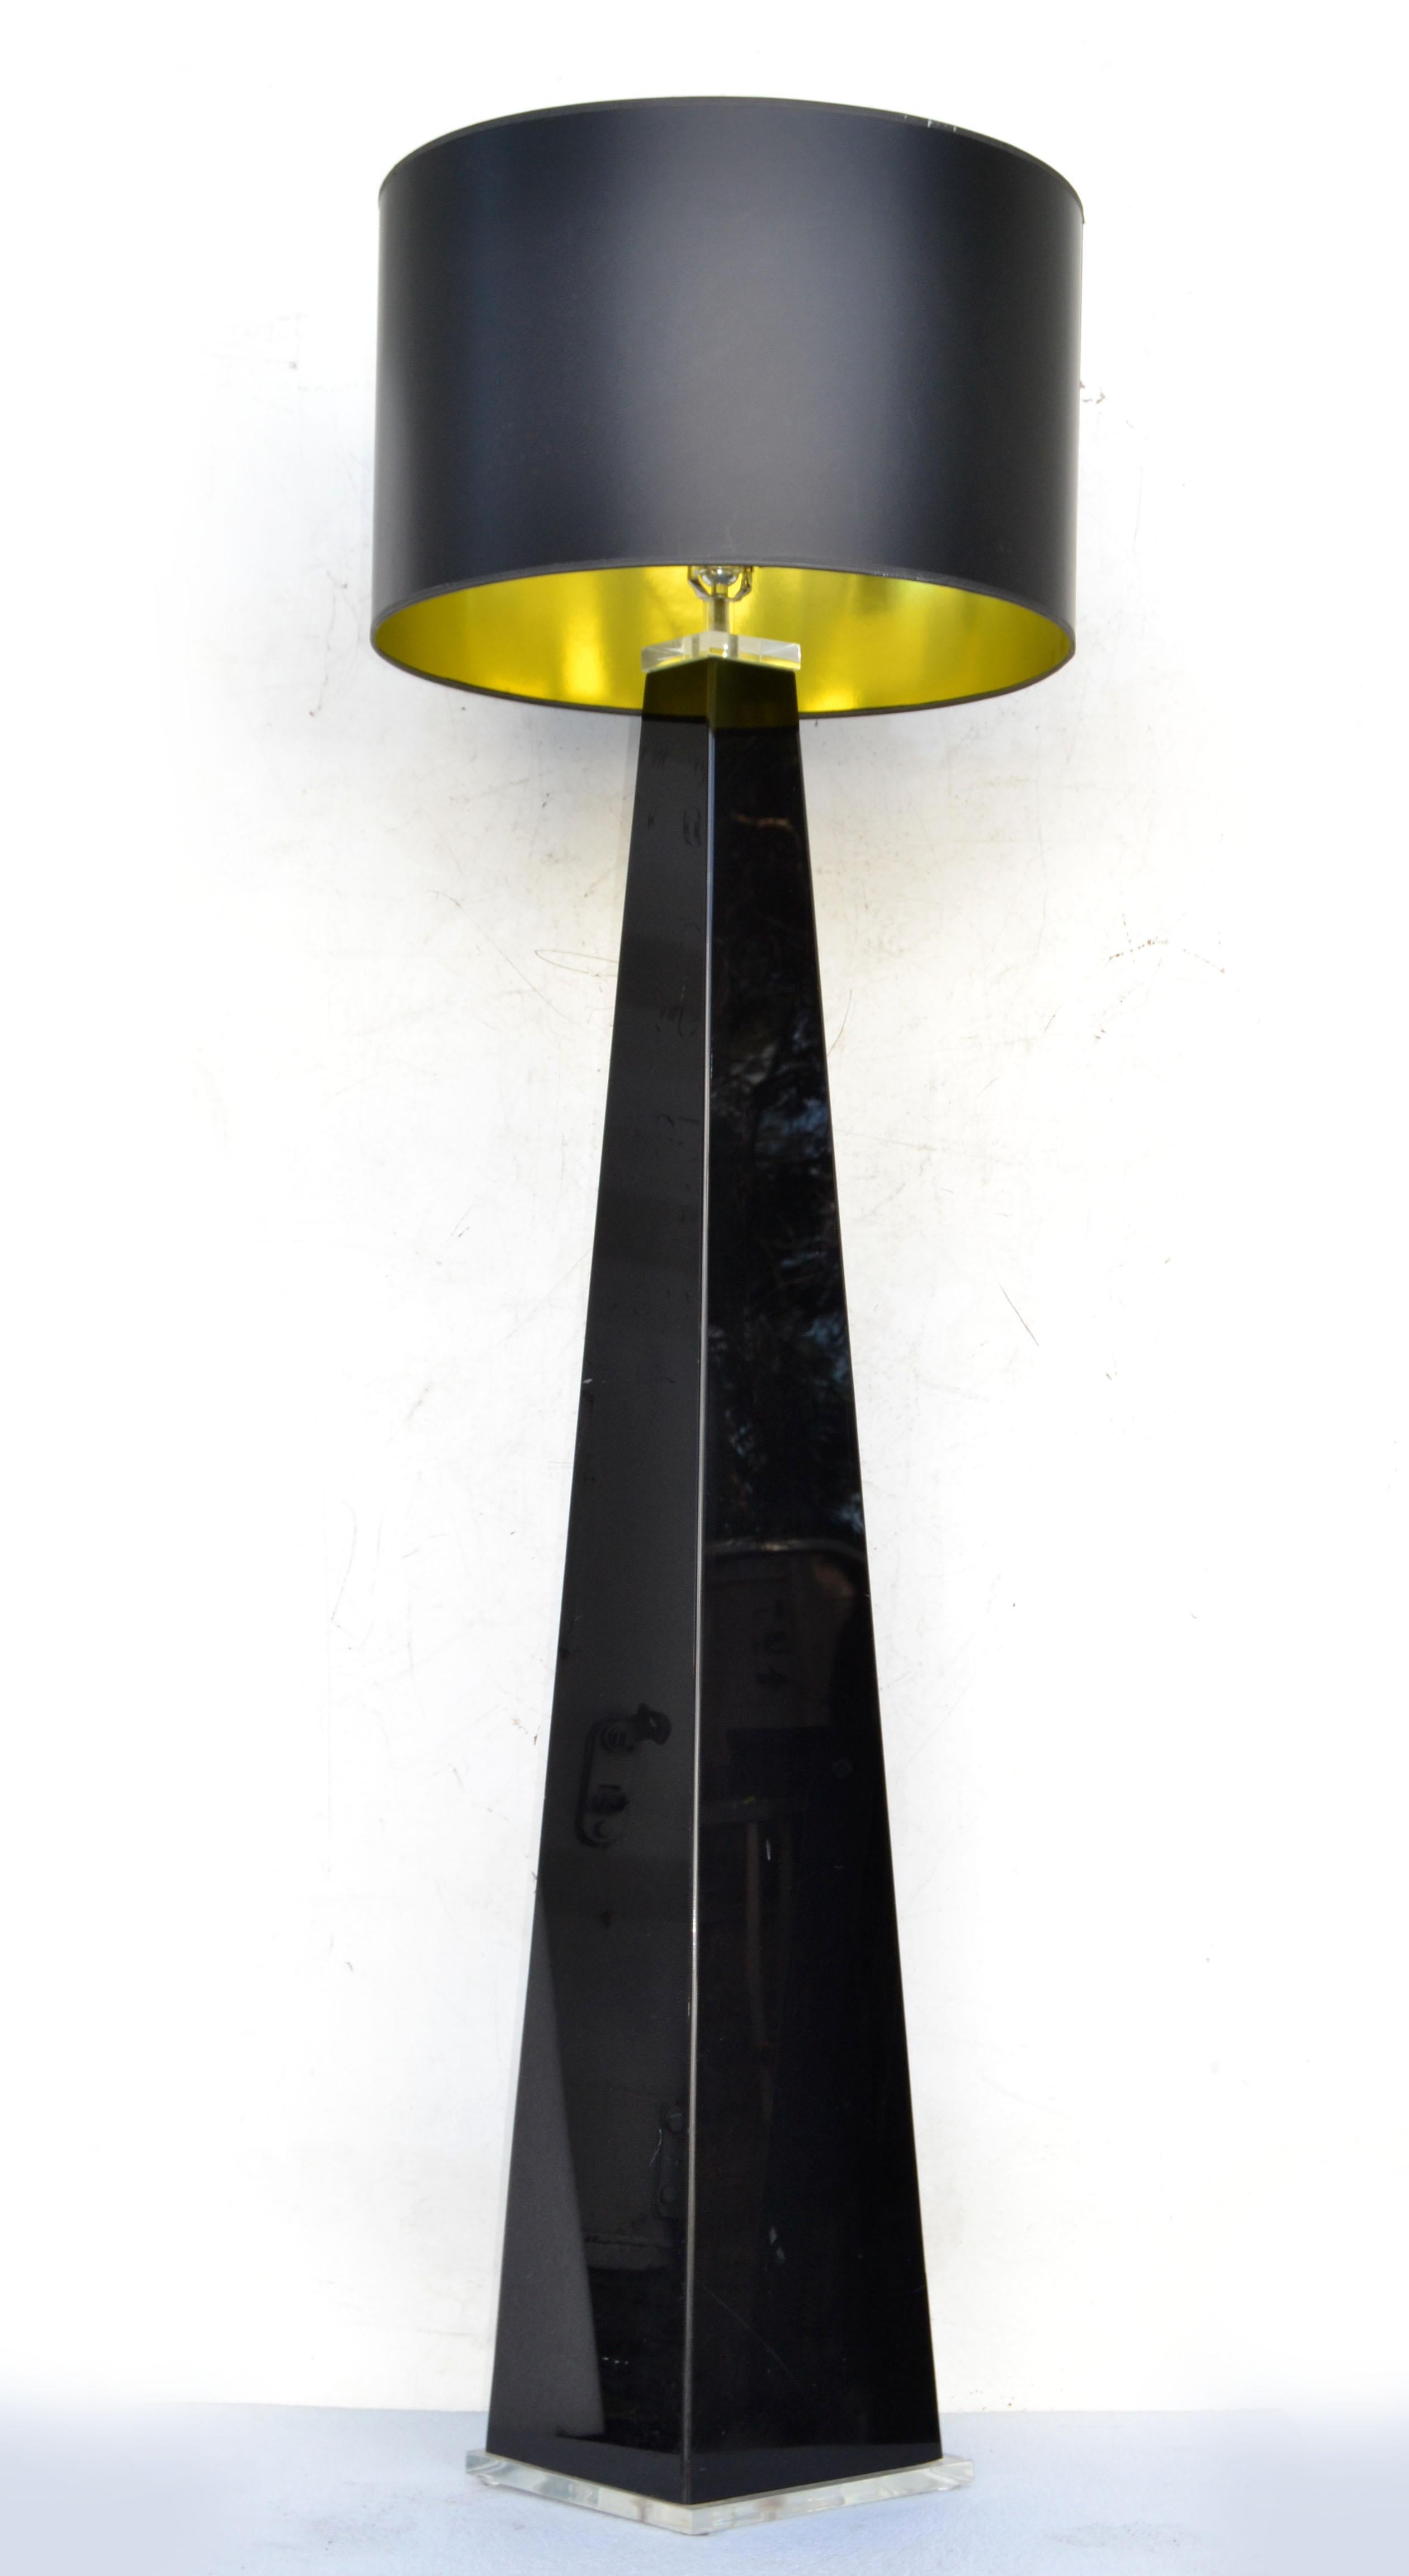 Grand lampadaire en forme de pyramide géométrique en Lucite noire avec une base carrée transparente.
Câblé aux États-Unis et en état de fonctionnement, prend une ampoule ordinaire ou LED.
La base transparente mesure : 11 x 11 pouces.
Hauteur au